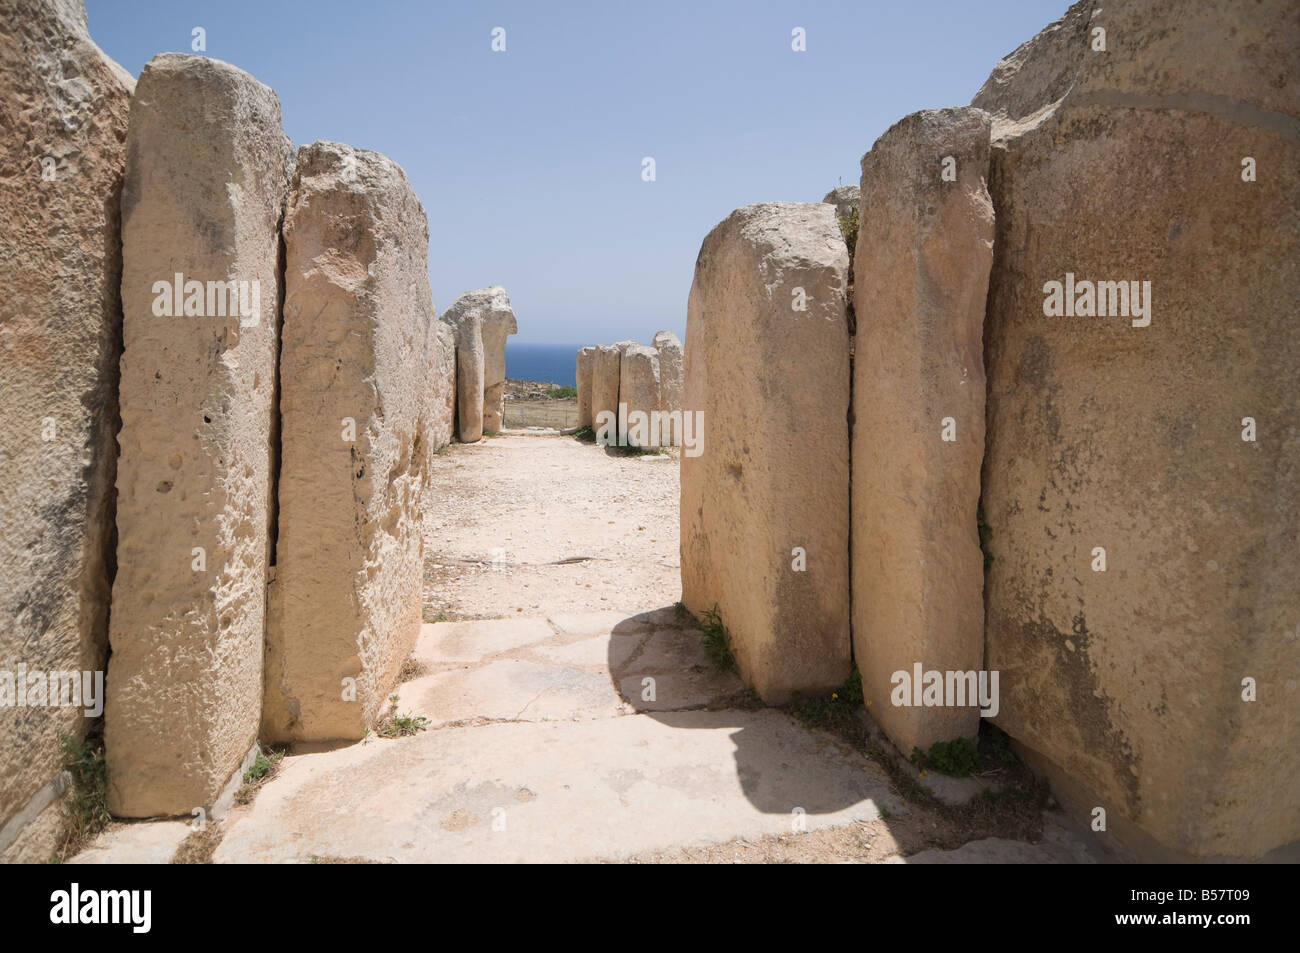 Un temple mégalithique de Mnajdra, construite à la fin du troisième milennium BC, UNESCO World Heritage Site, Malta, Europe Banque D'Images